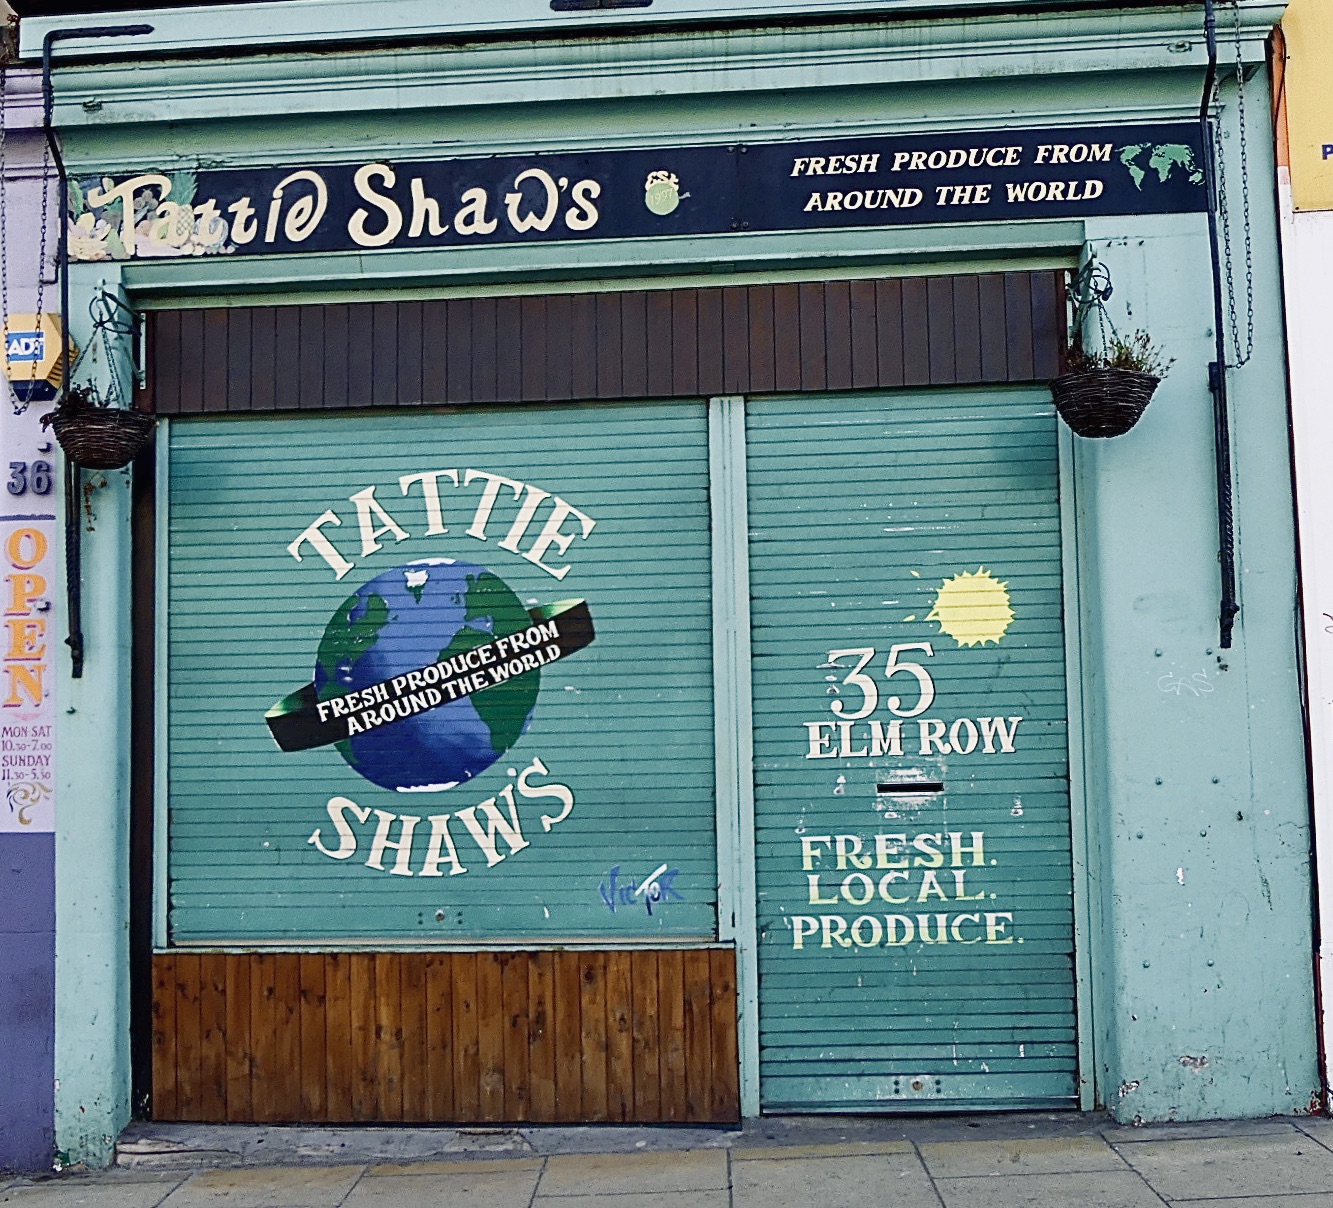 Tattie Shaw's